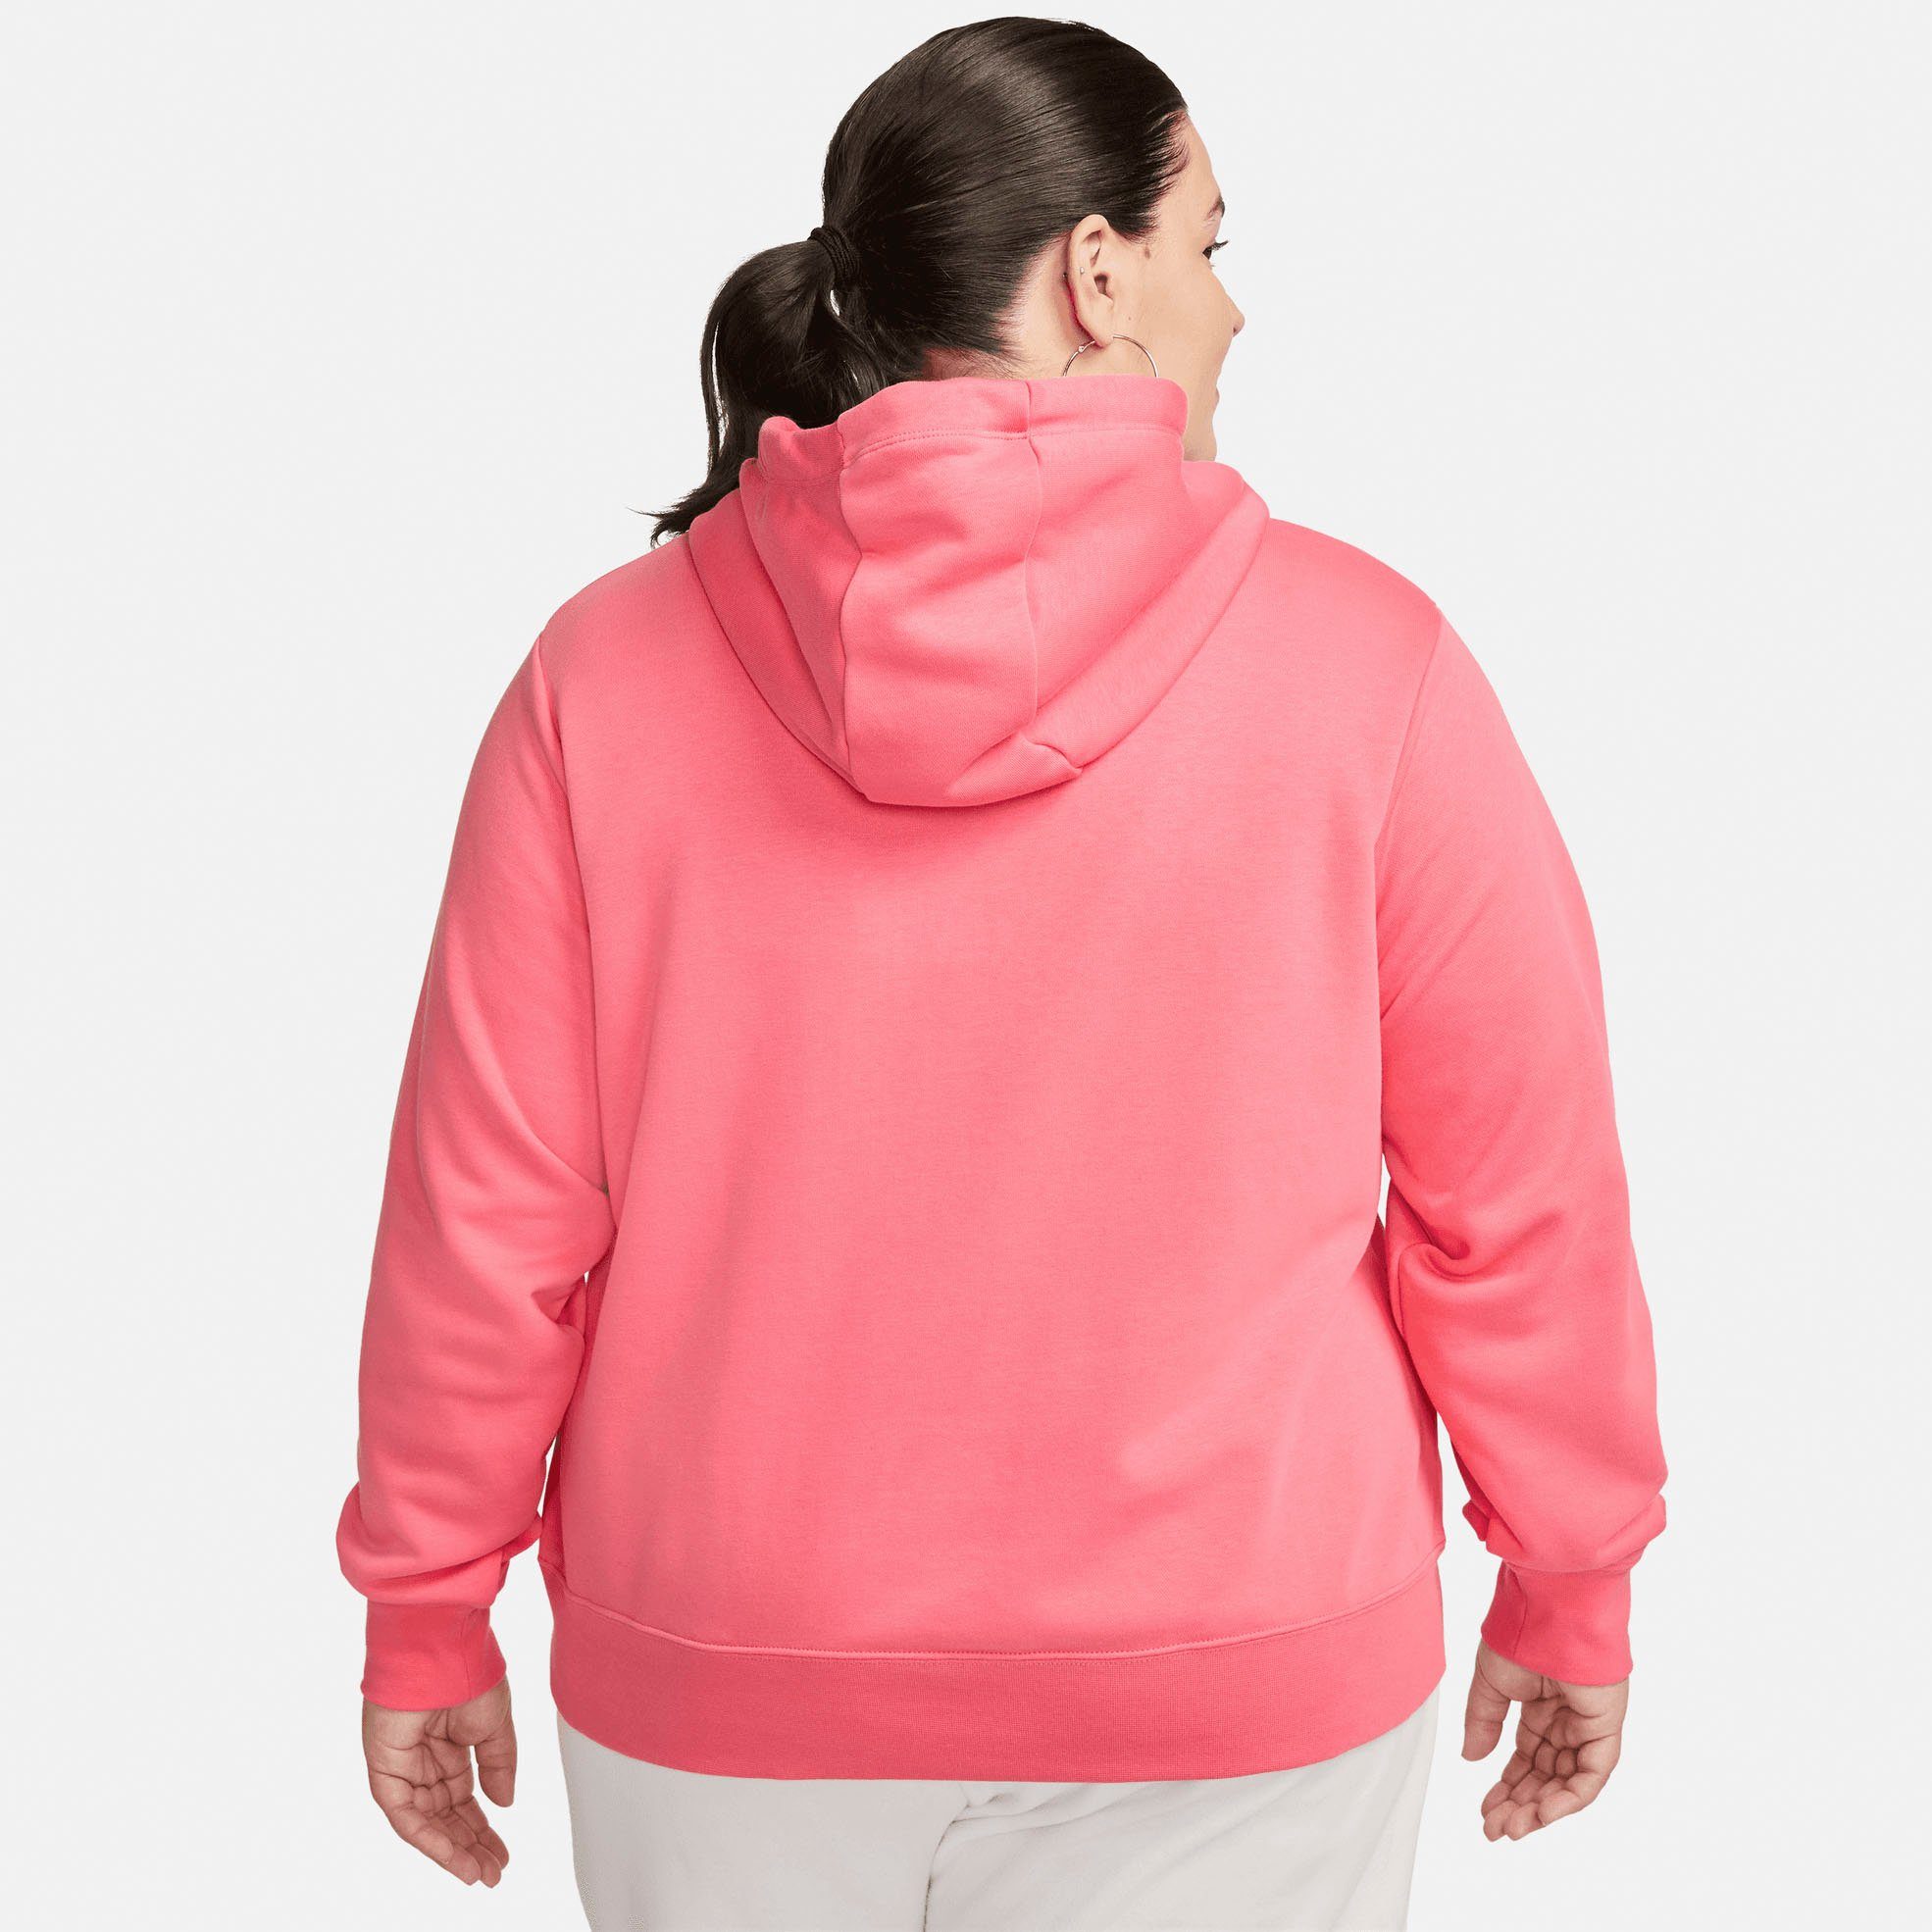 Fleece orange Women's Nike Pullover Sportswear Club Hoodie Size) Kapuzensweatshirt (Plus